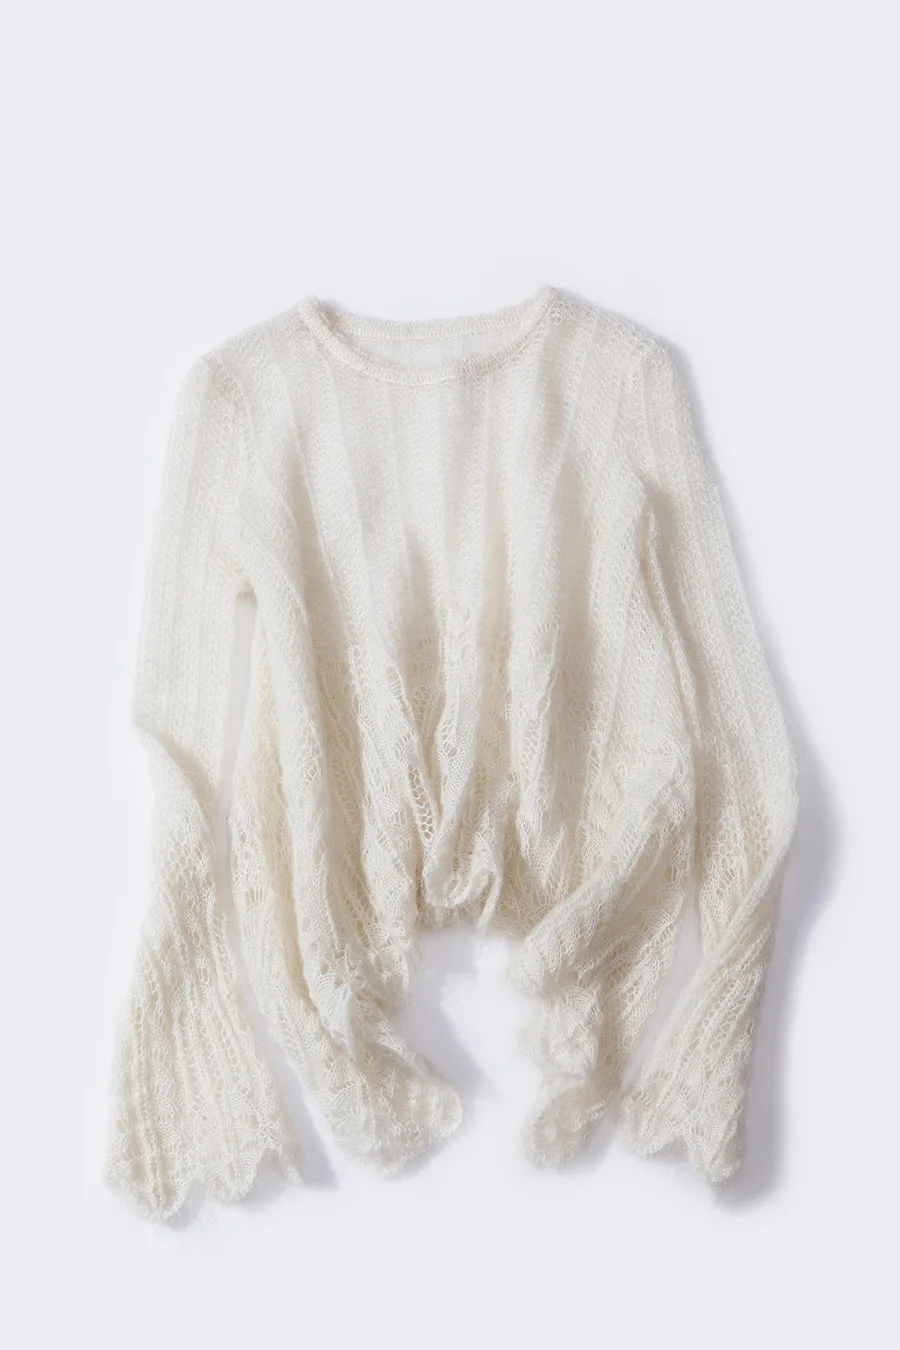 BAHTLEE весна осень женские мохеровые пуловеры с круглым вырезом выдолбленный свитер вязаный длинный рукав шерстяной джемпер ленивый стиль